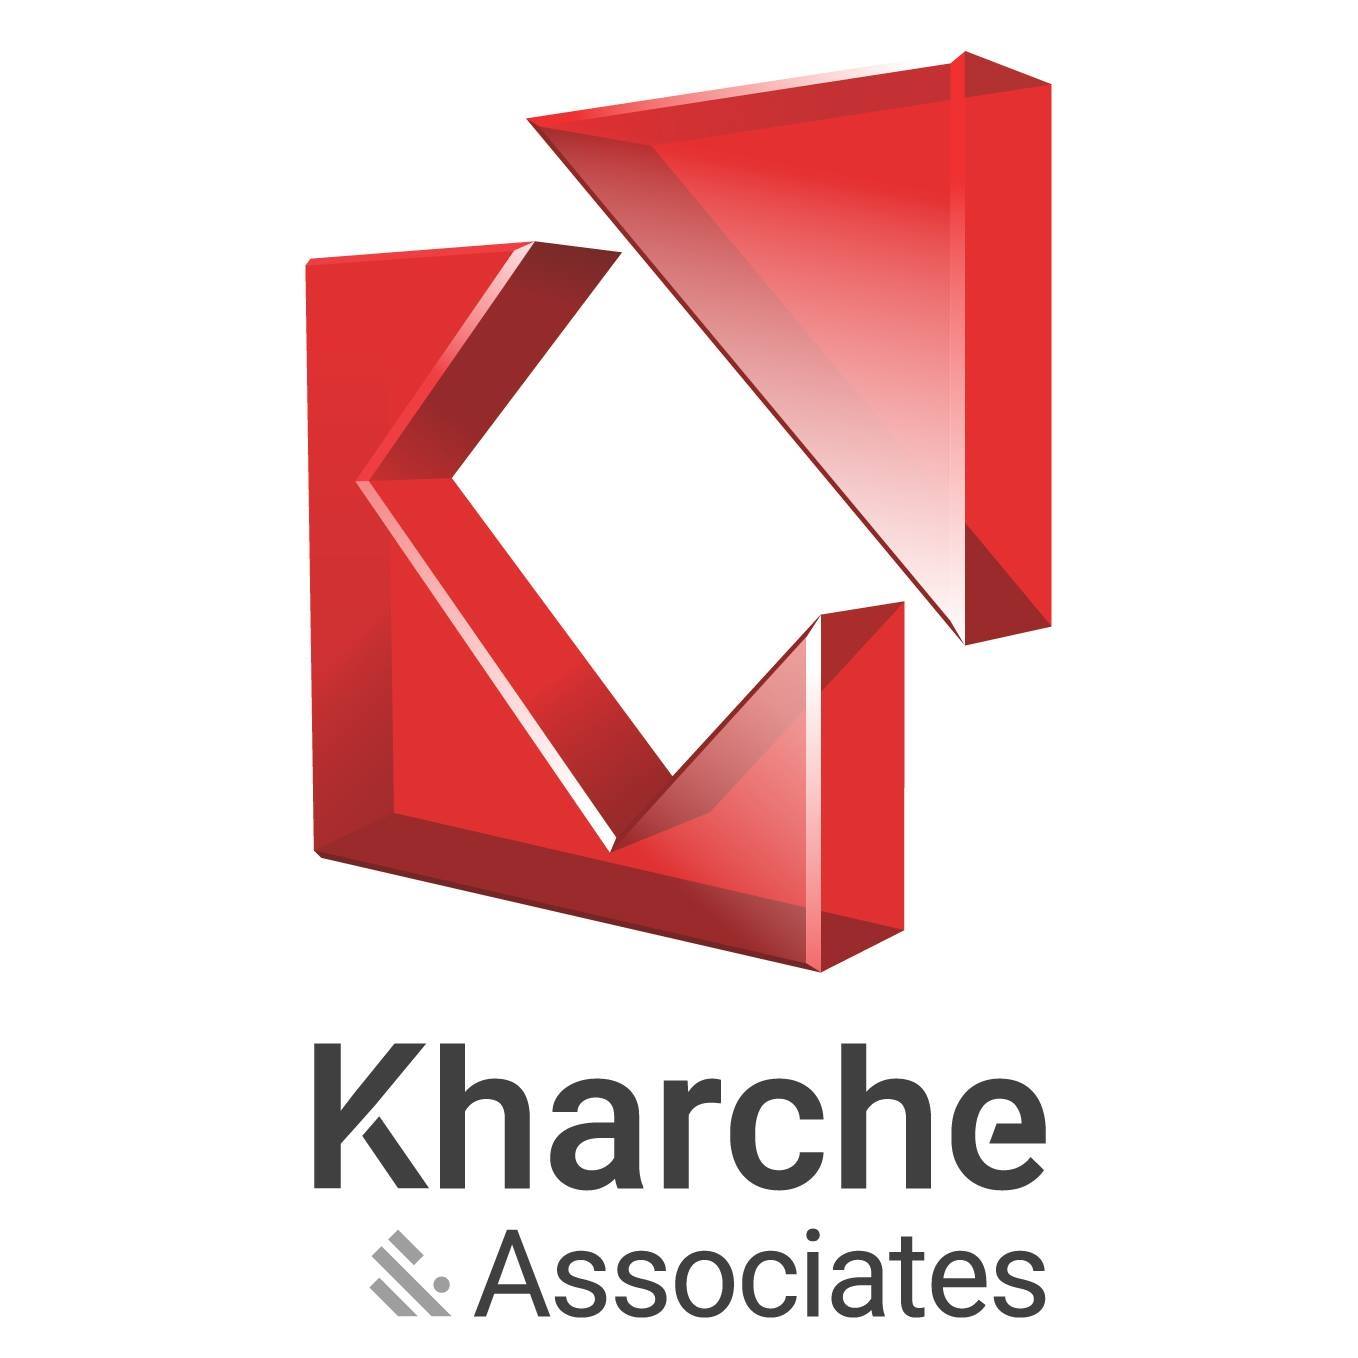 Kharche & Associates|Architect|Professional Services